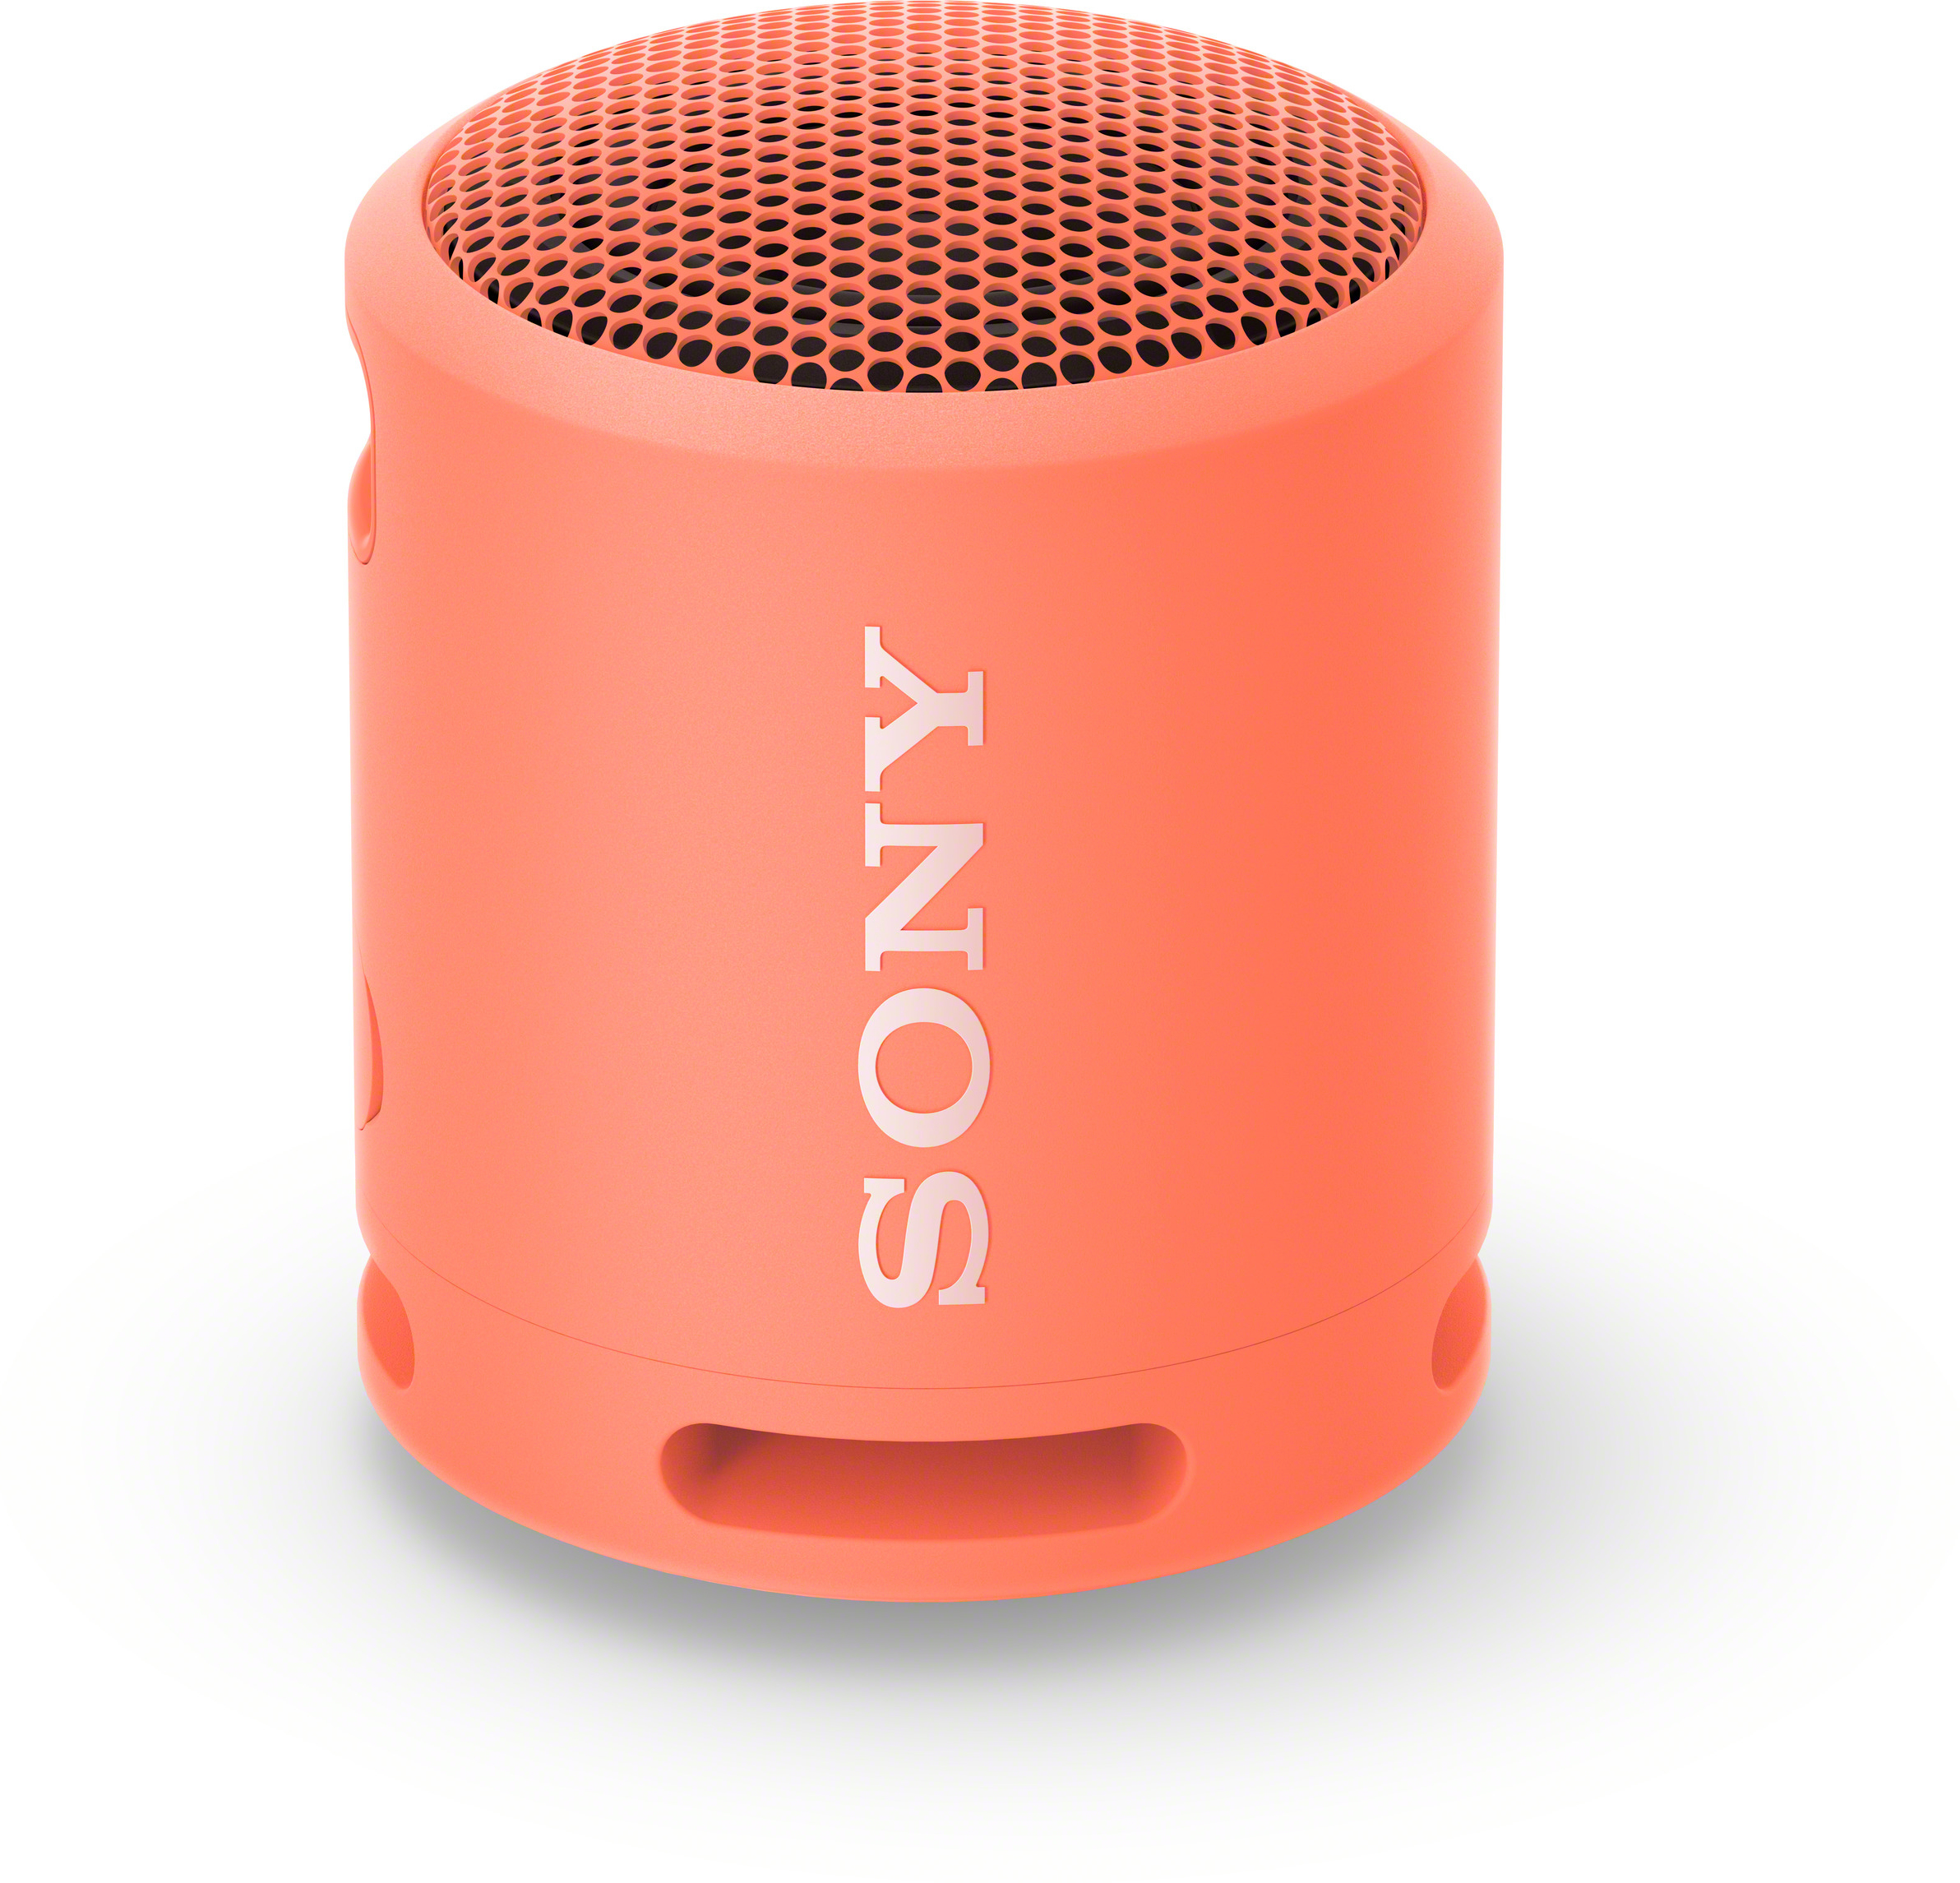 Sony SRSXB13 Altavoz portátil estéreo Coral, Rosa